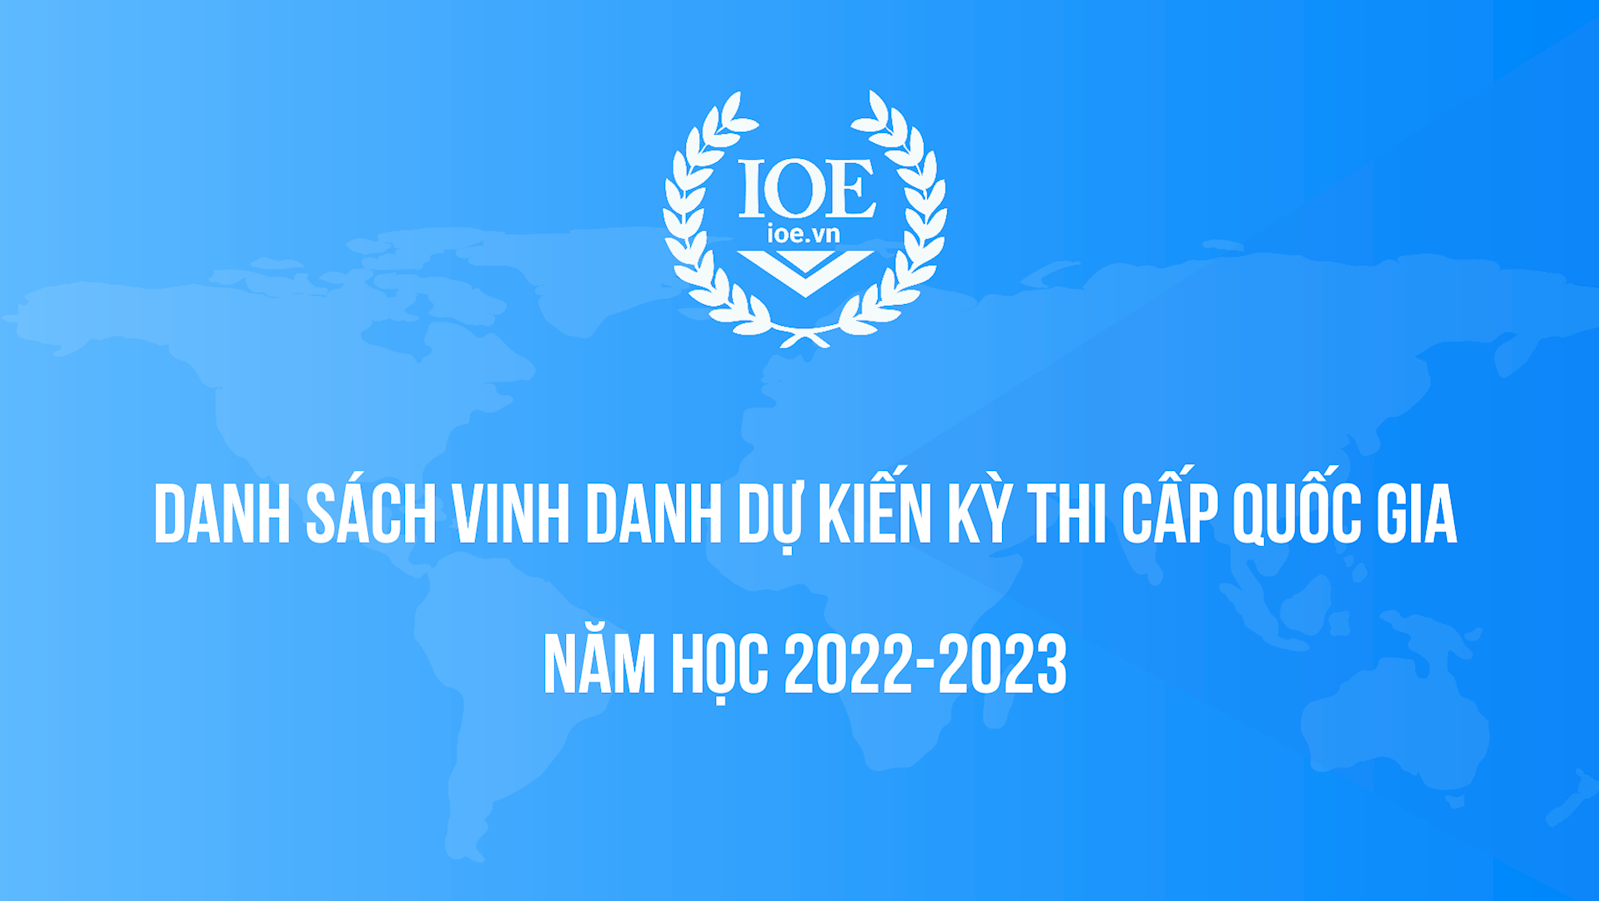 BTC thông báo Danh sách Vinh danh dự kiến Kỳ thi cấp quốc gia năm học 2022-2023  